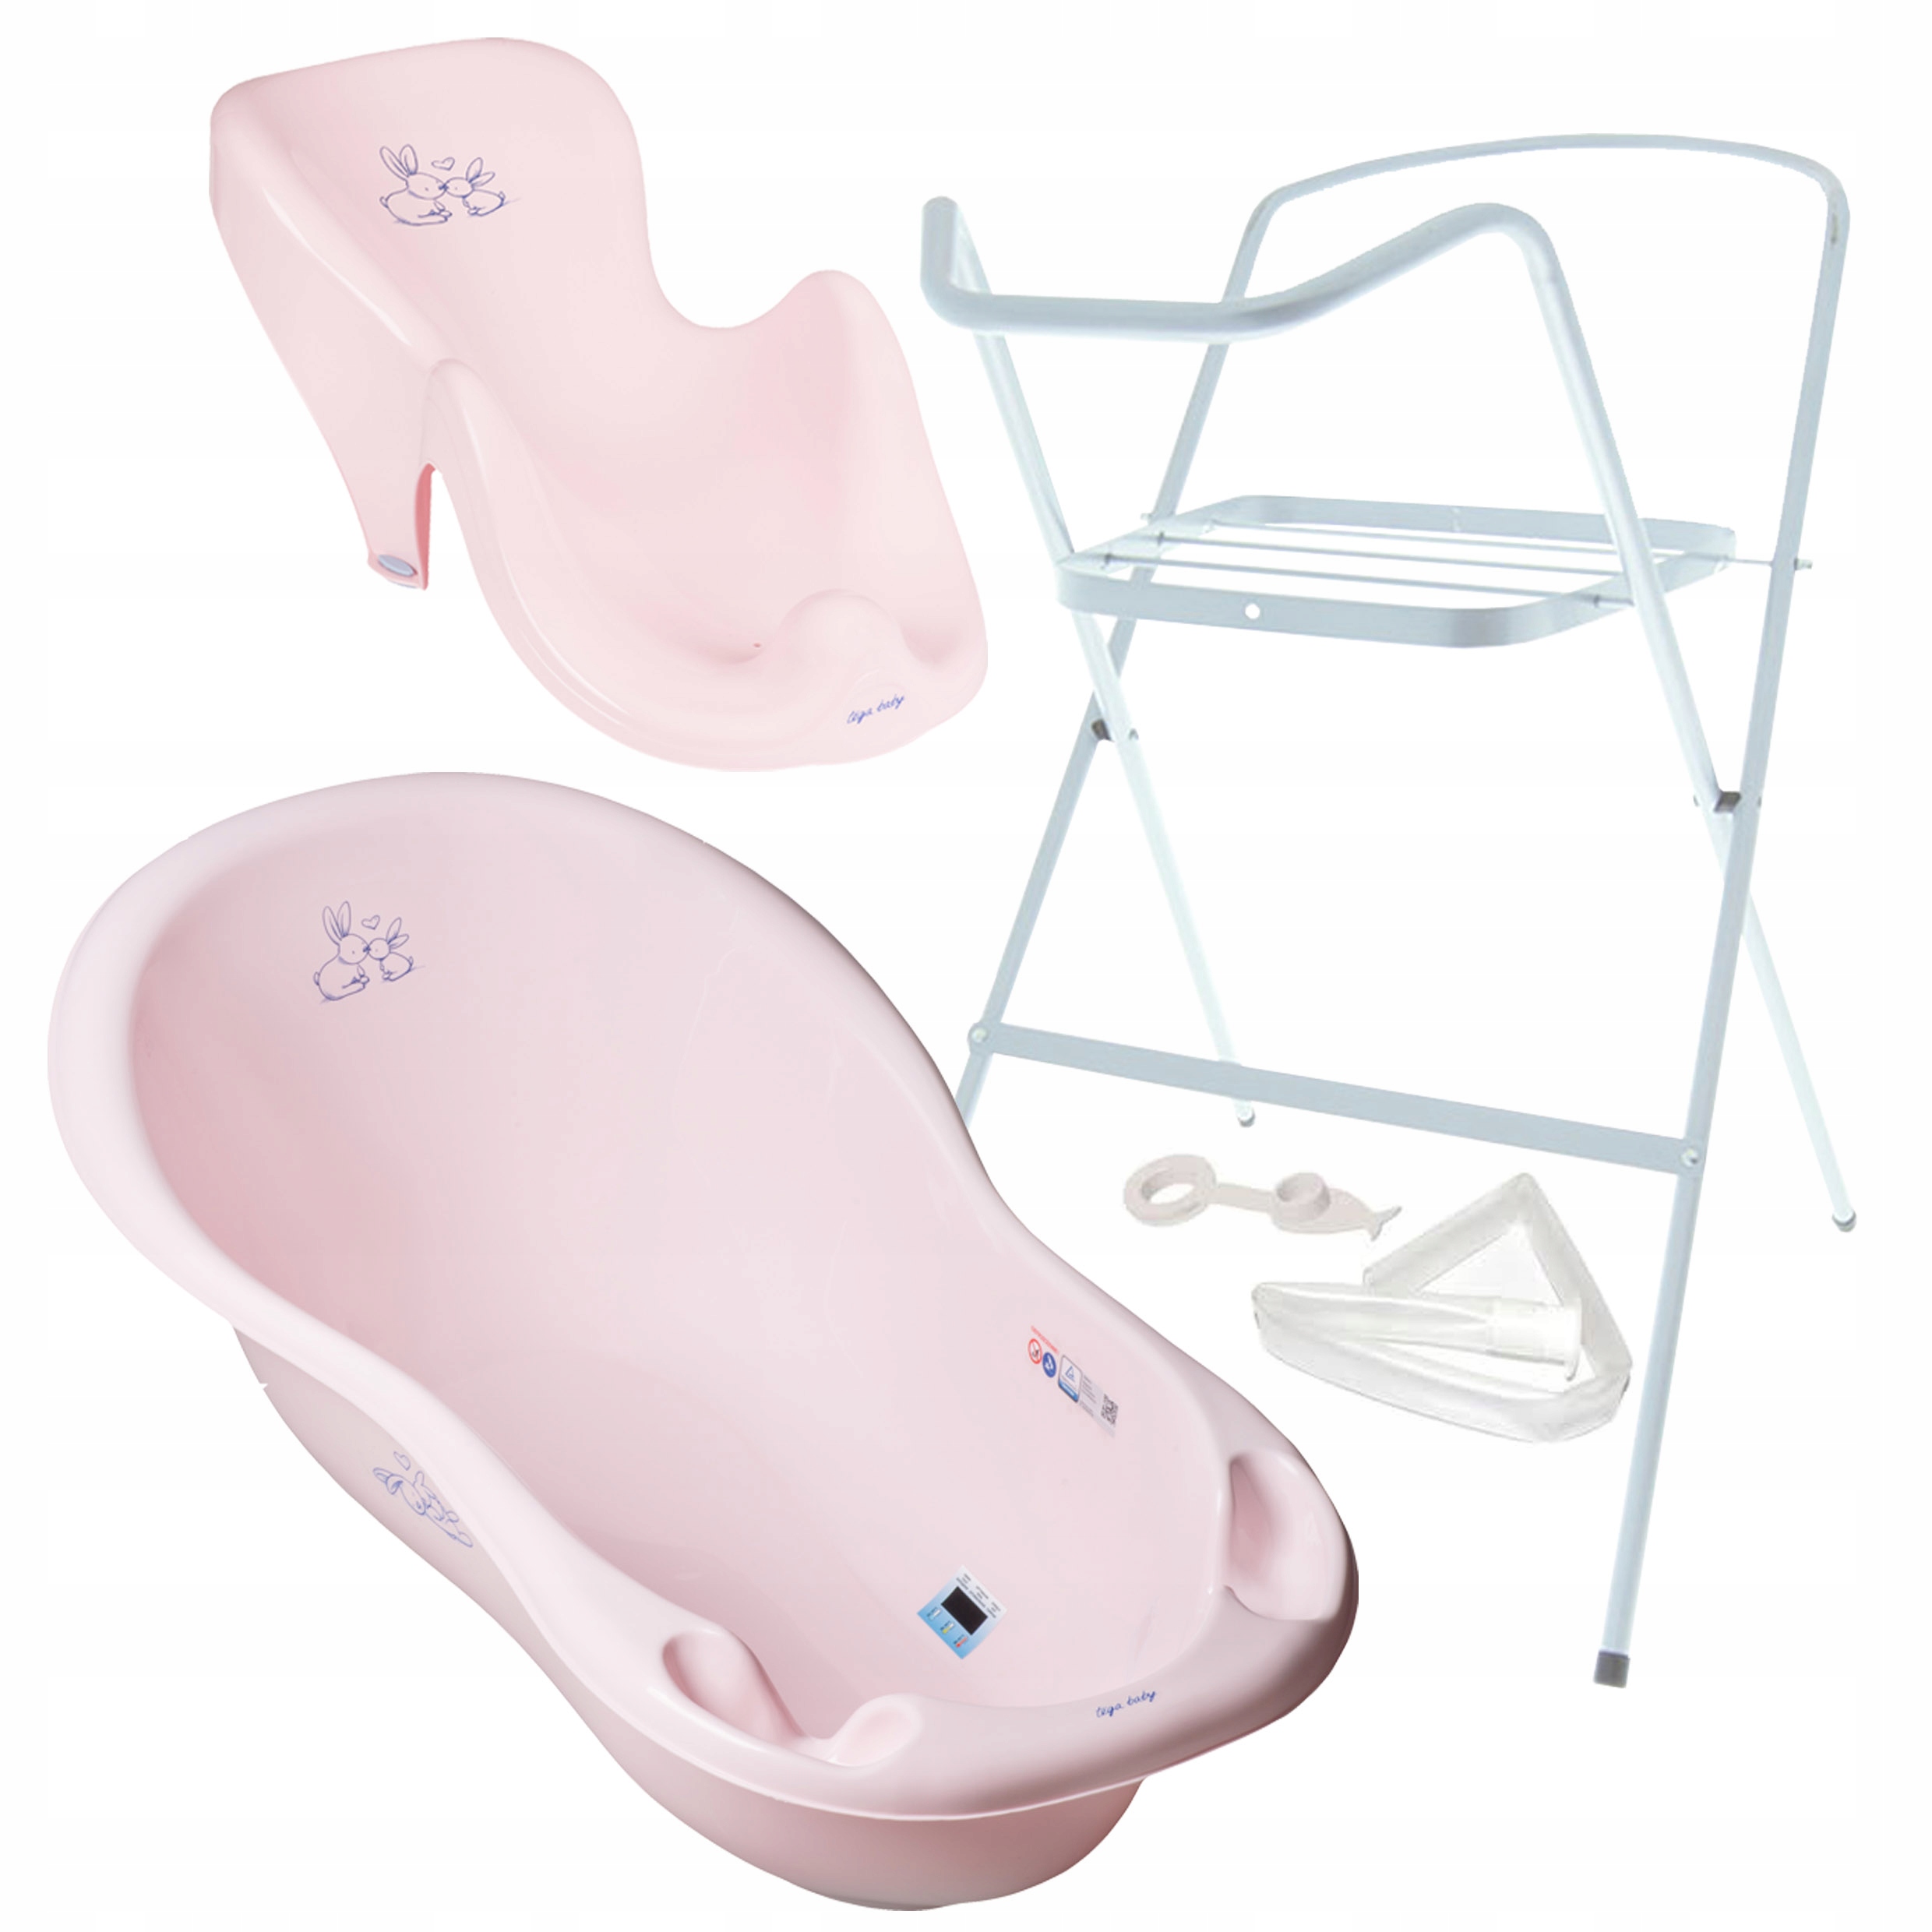 Ванна для новорожденных цена. Ванна 3в1 Tega детская ванна стенд шезлонг. Подставка под детскую ванночку Tega Baby. Ванночка для новорожденных с подставкой. Ванночка для купания новорожденных с подставкой.